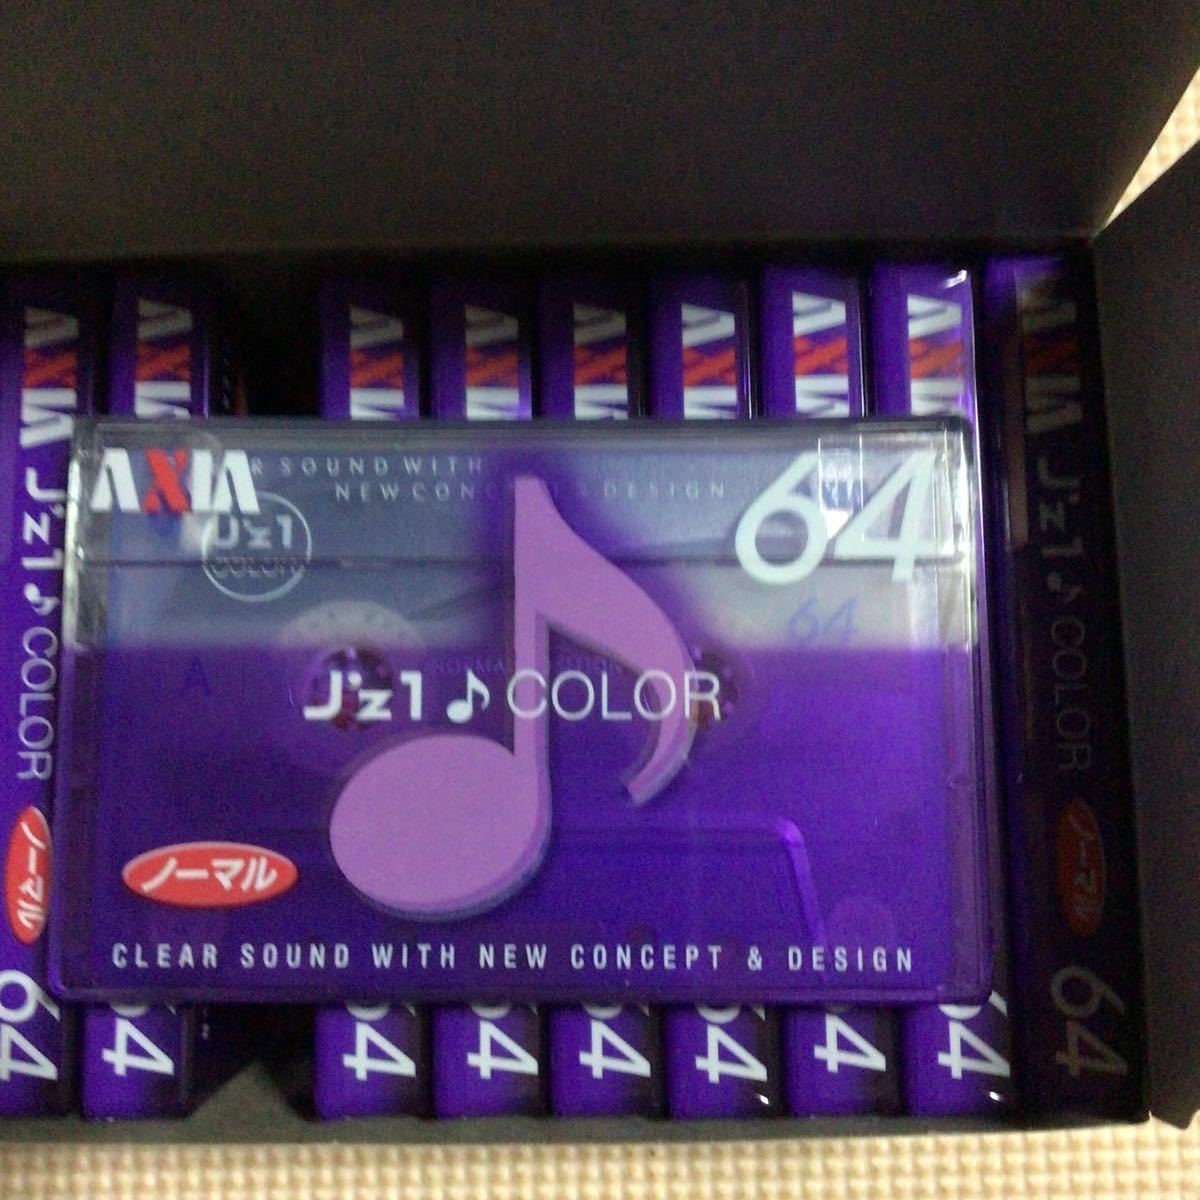 AXIA J'Z1 COLOR 64【外箱付き10本x2】ノーマルポジション カセットテープ【未開封新品】●の画像4